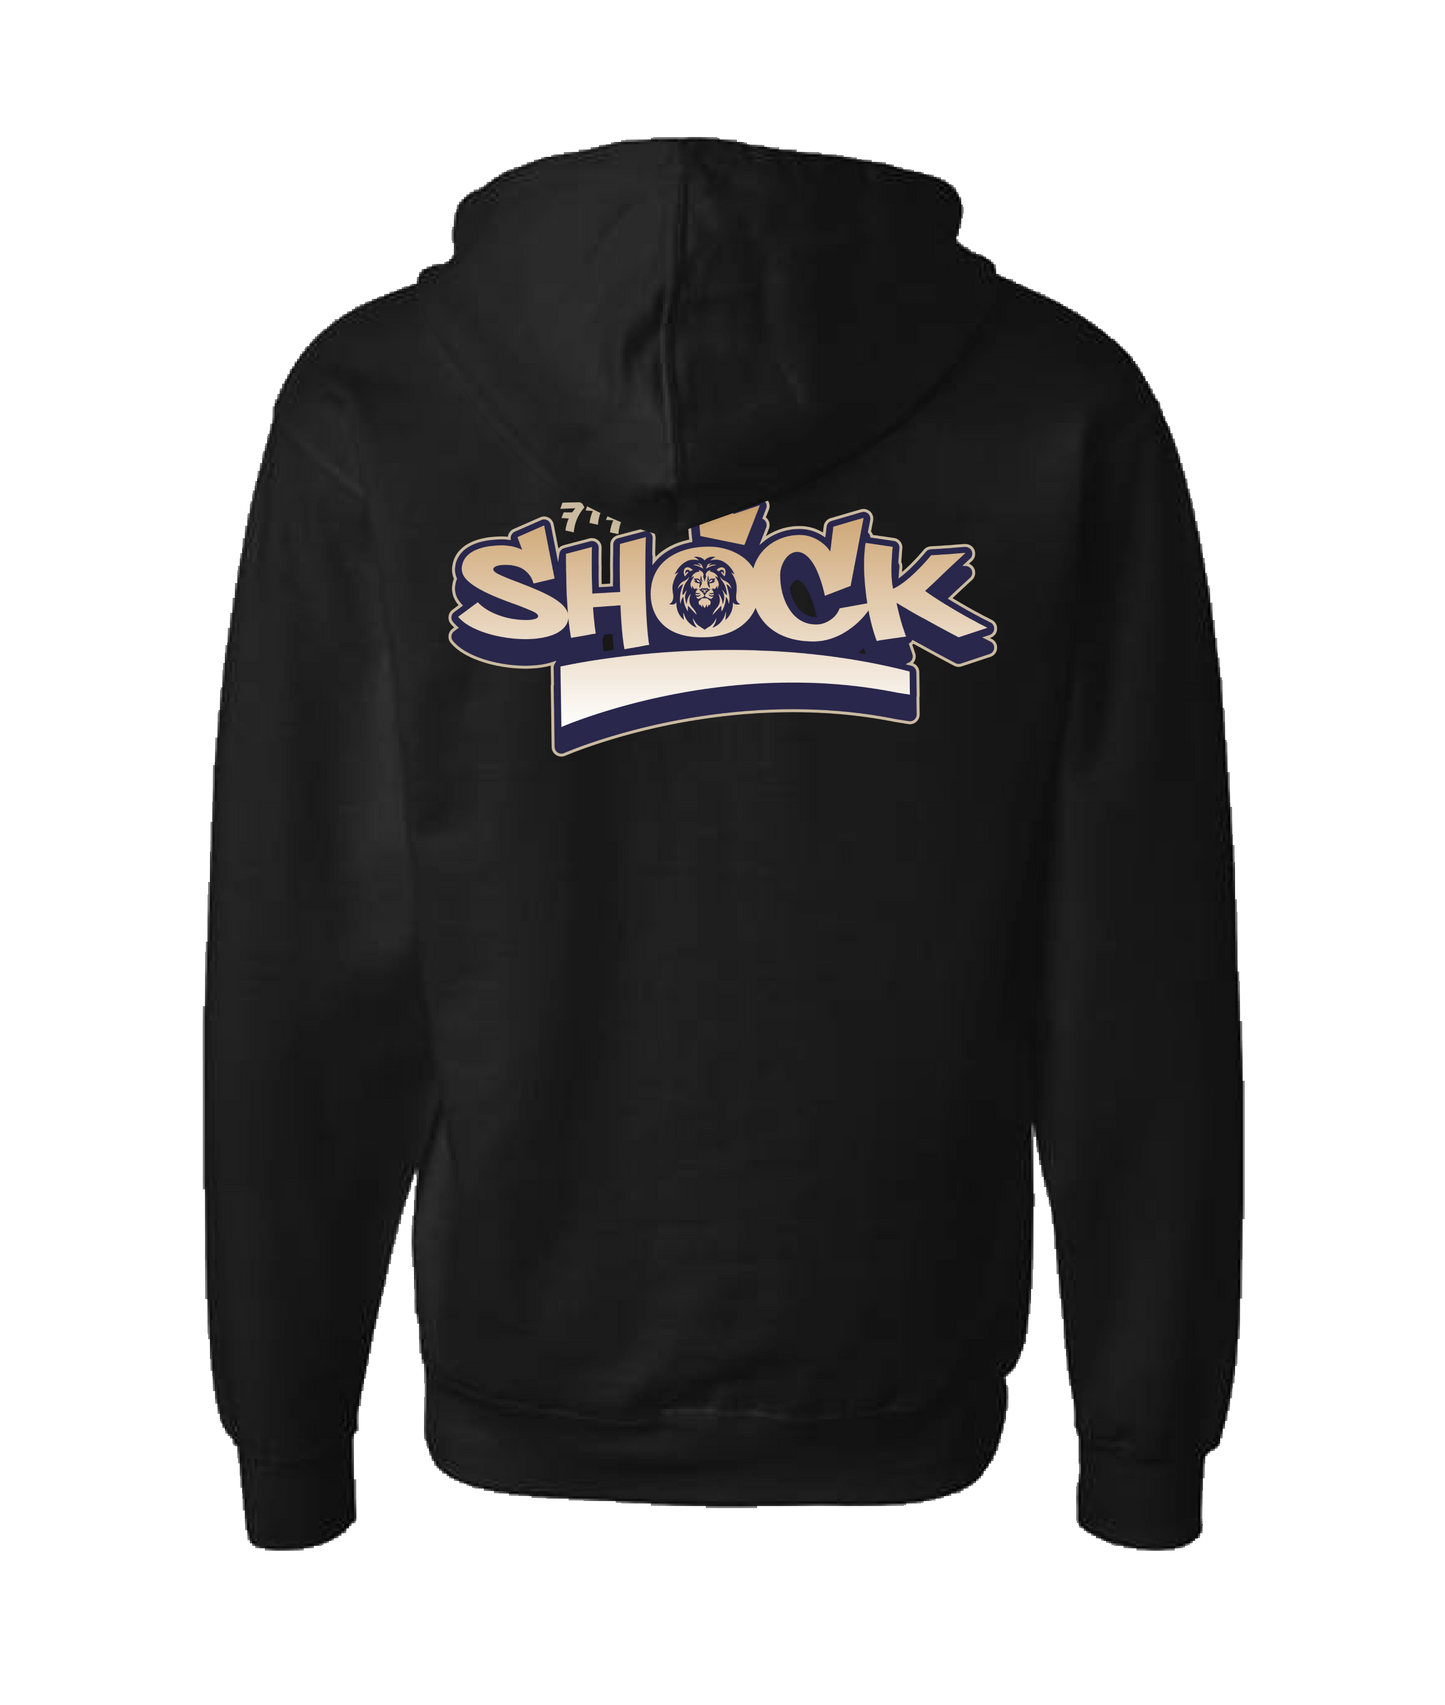 Shock - SHOCK - Black Zip Up Hoodie